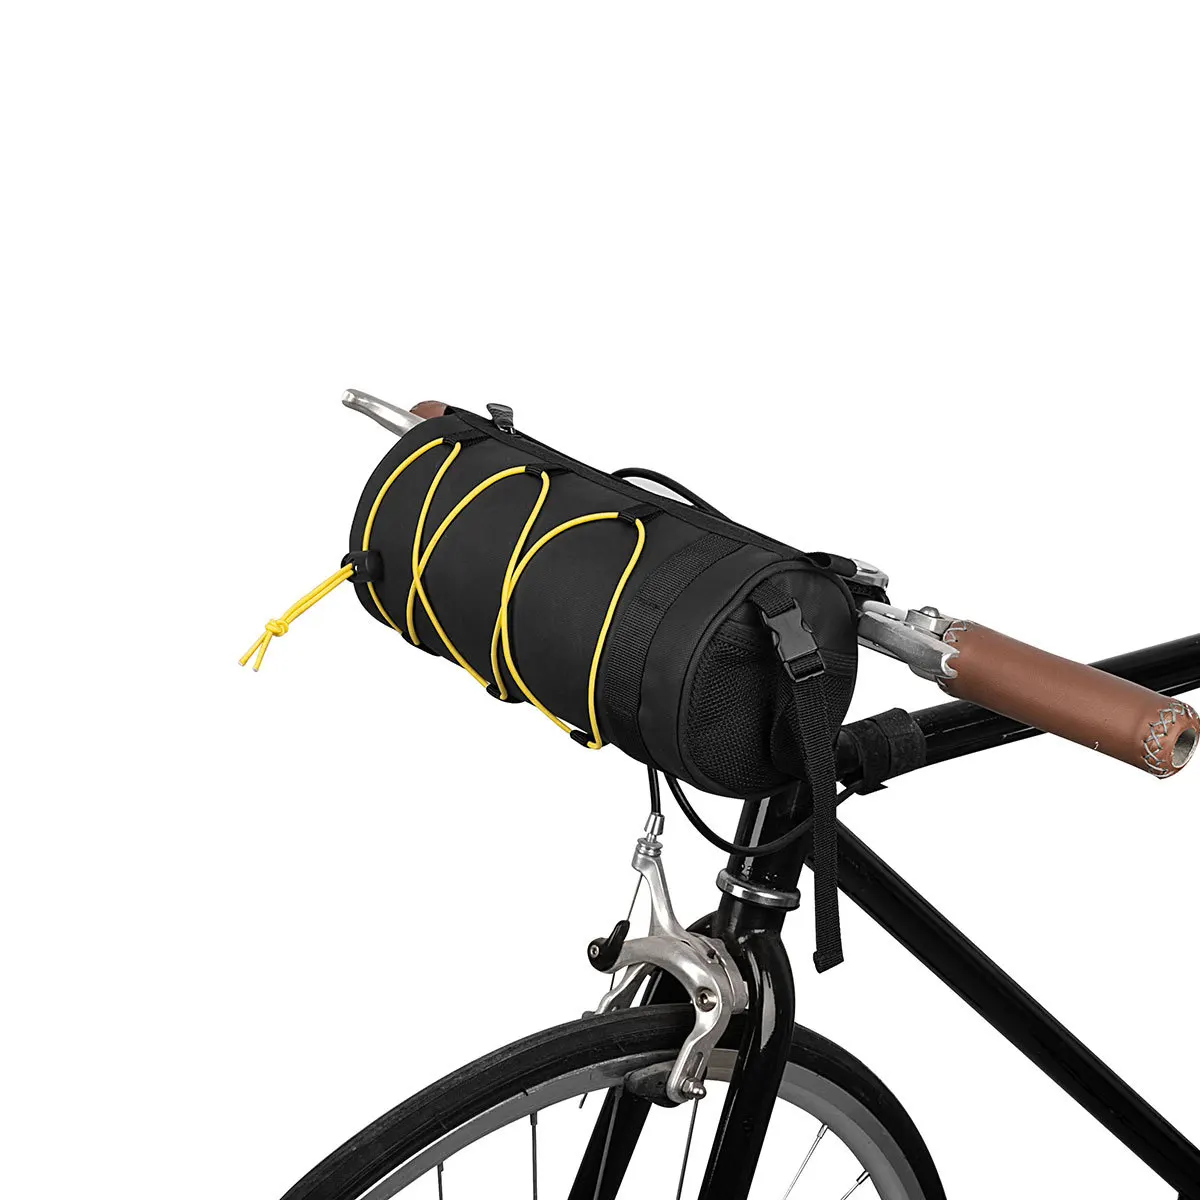 Аксессуары для велосипеда Аксессуары для велосипеда, Фурнитура, Передняя сумка для хлеба, Аксессуары для велосипеда, Универсальная упаковка для мото-велоспорта Изображение 0 